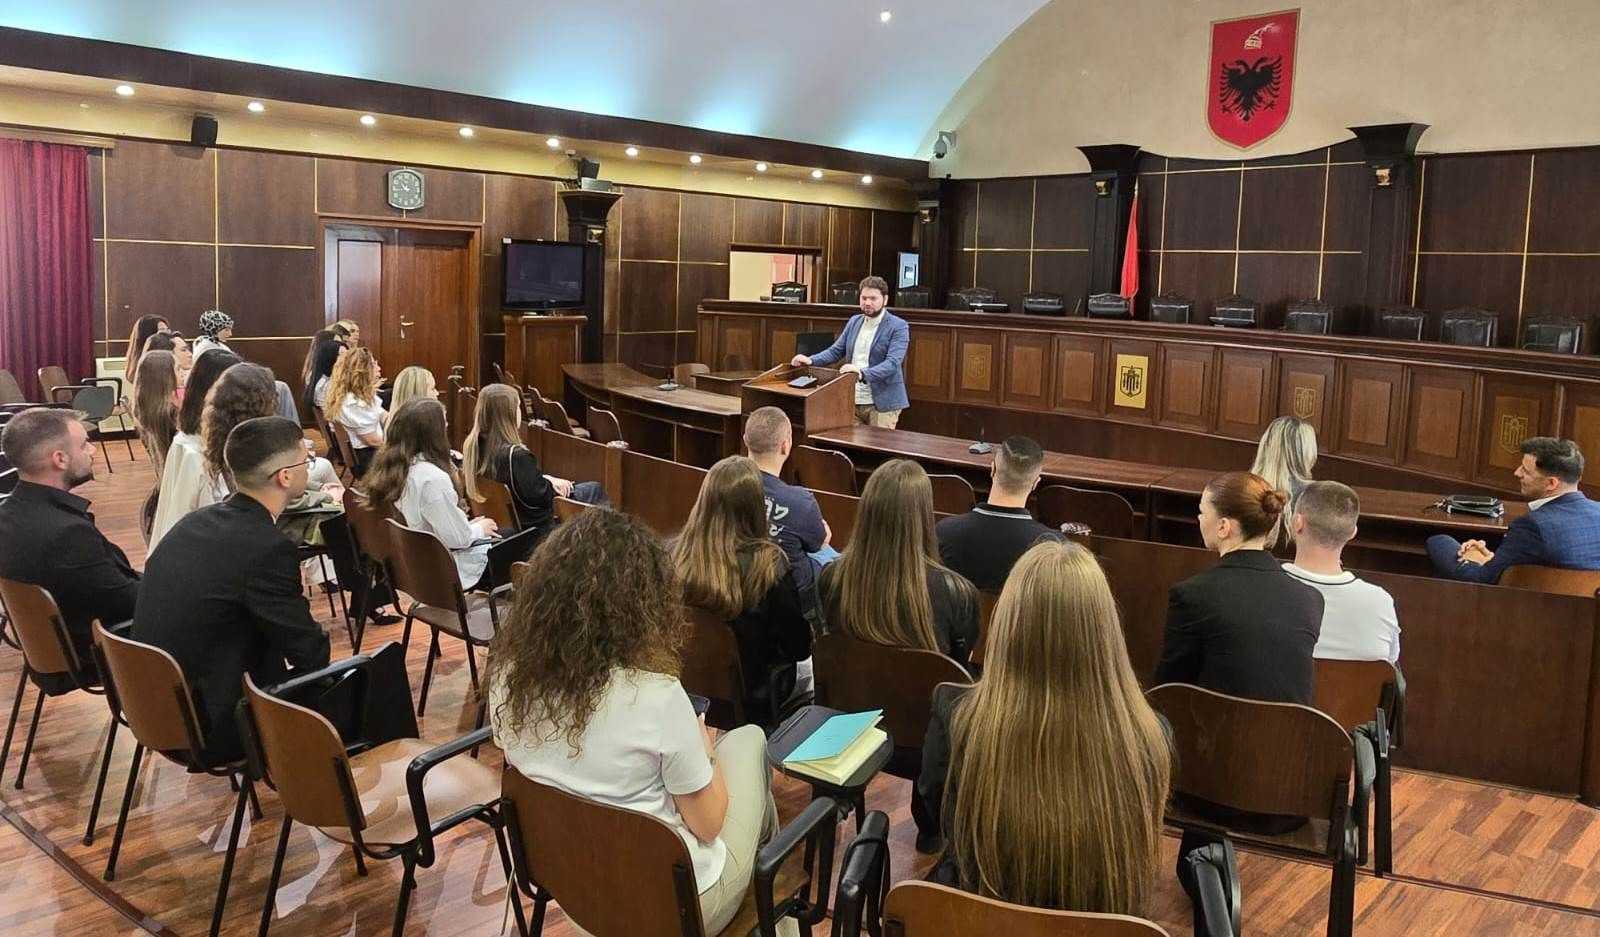 Studentë të Fakultetit të Drejtësisë të Universitetit Europian të Tiranës, në bashkëpunim me Gjykatën e Lartë organizuan një praktikë mësimore në ambientet e gjykatës.